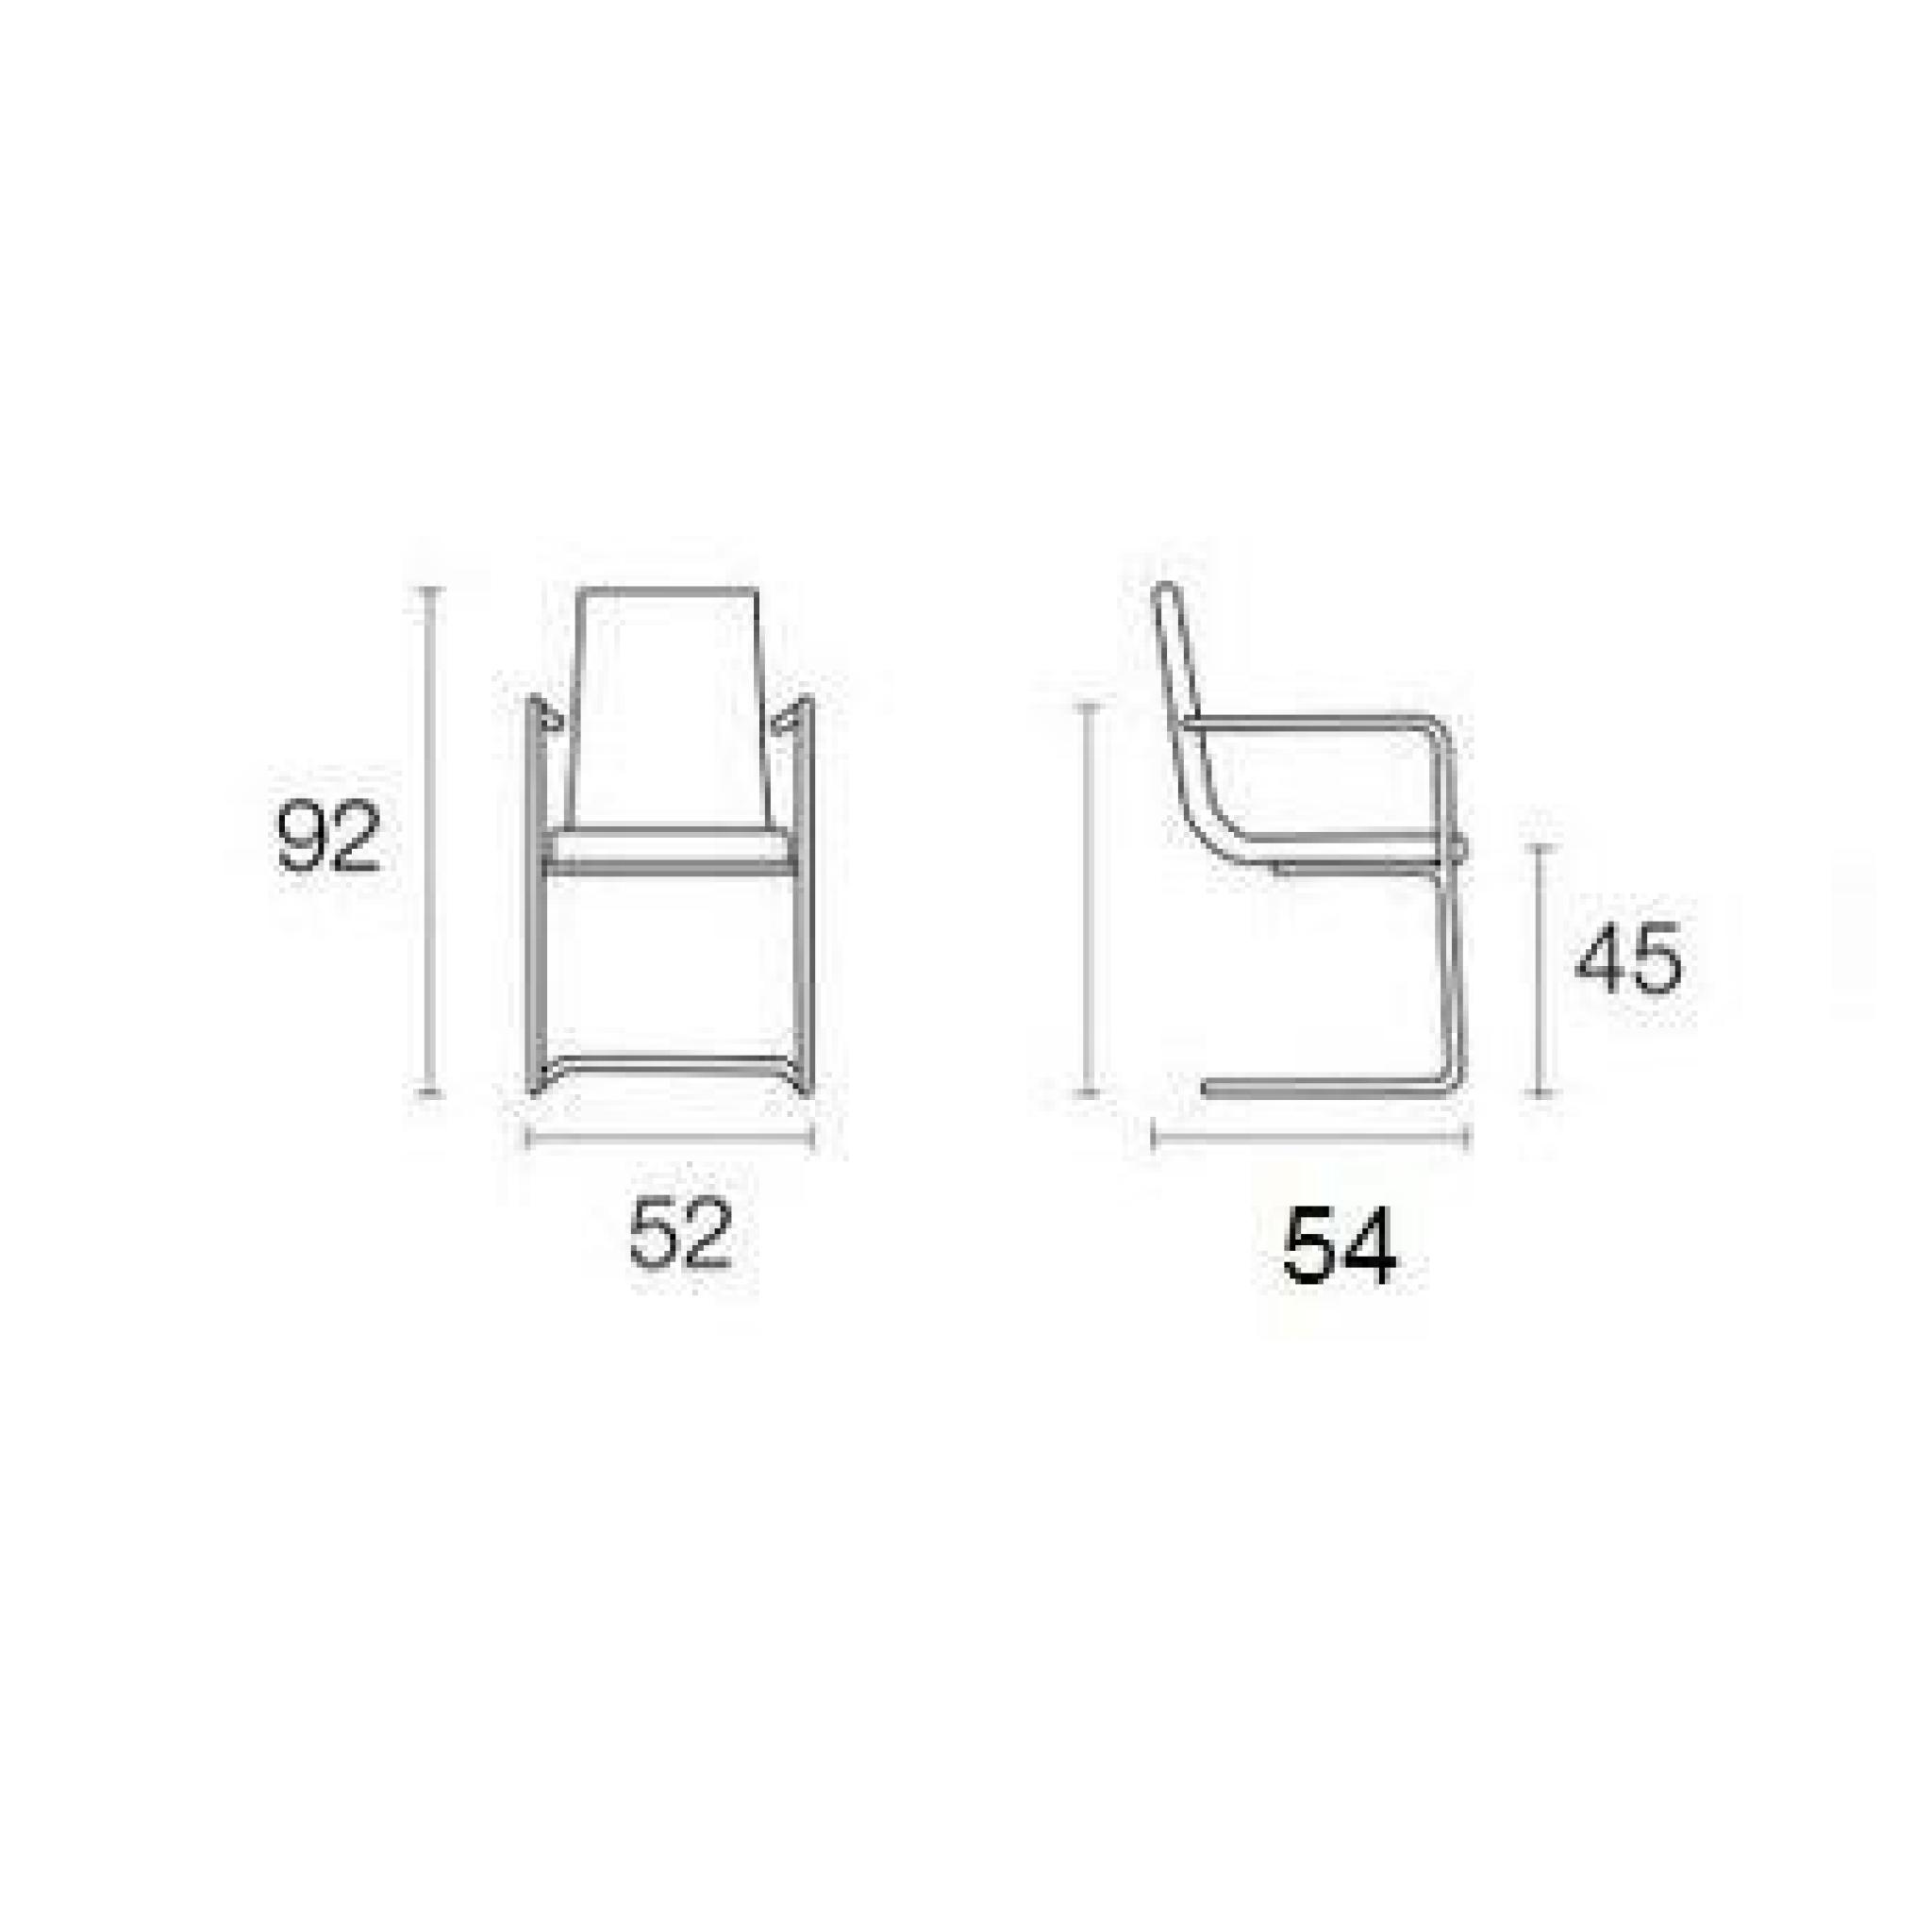 CRUISER chaise haut de gamme de CALLIGARIS avec accoudoirs plusieurs choix de coloris pas cher